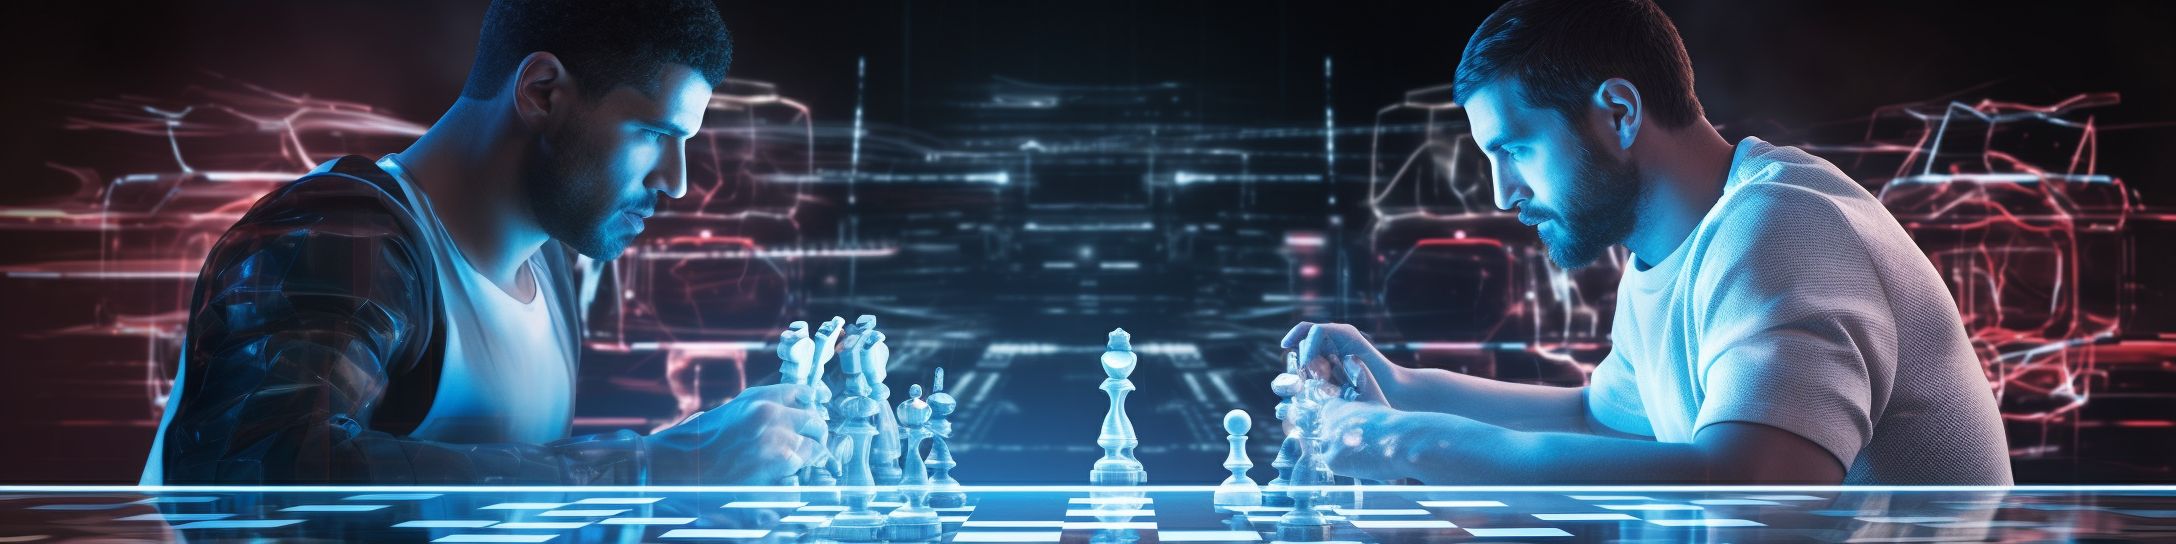 Projections futures dans le monde du chessboxing